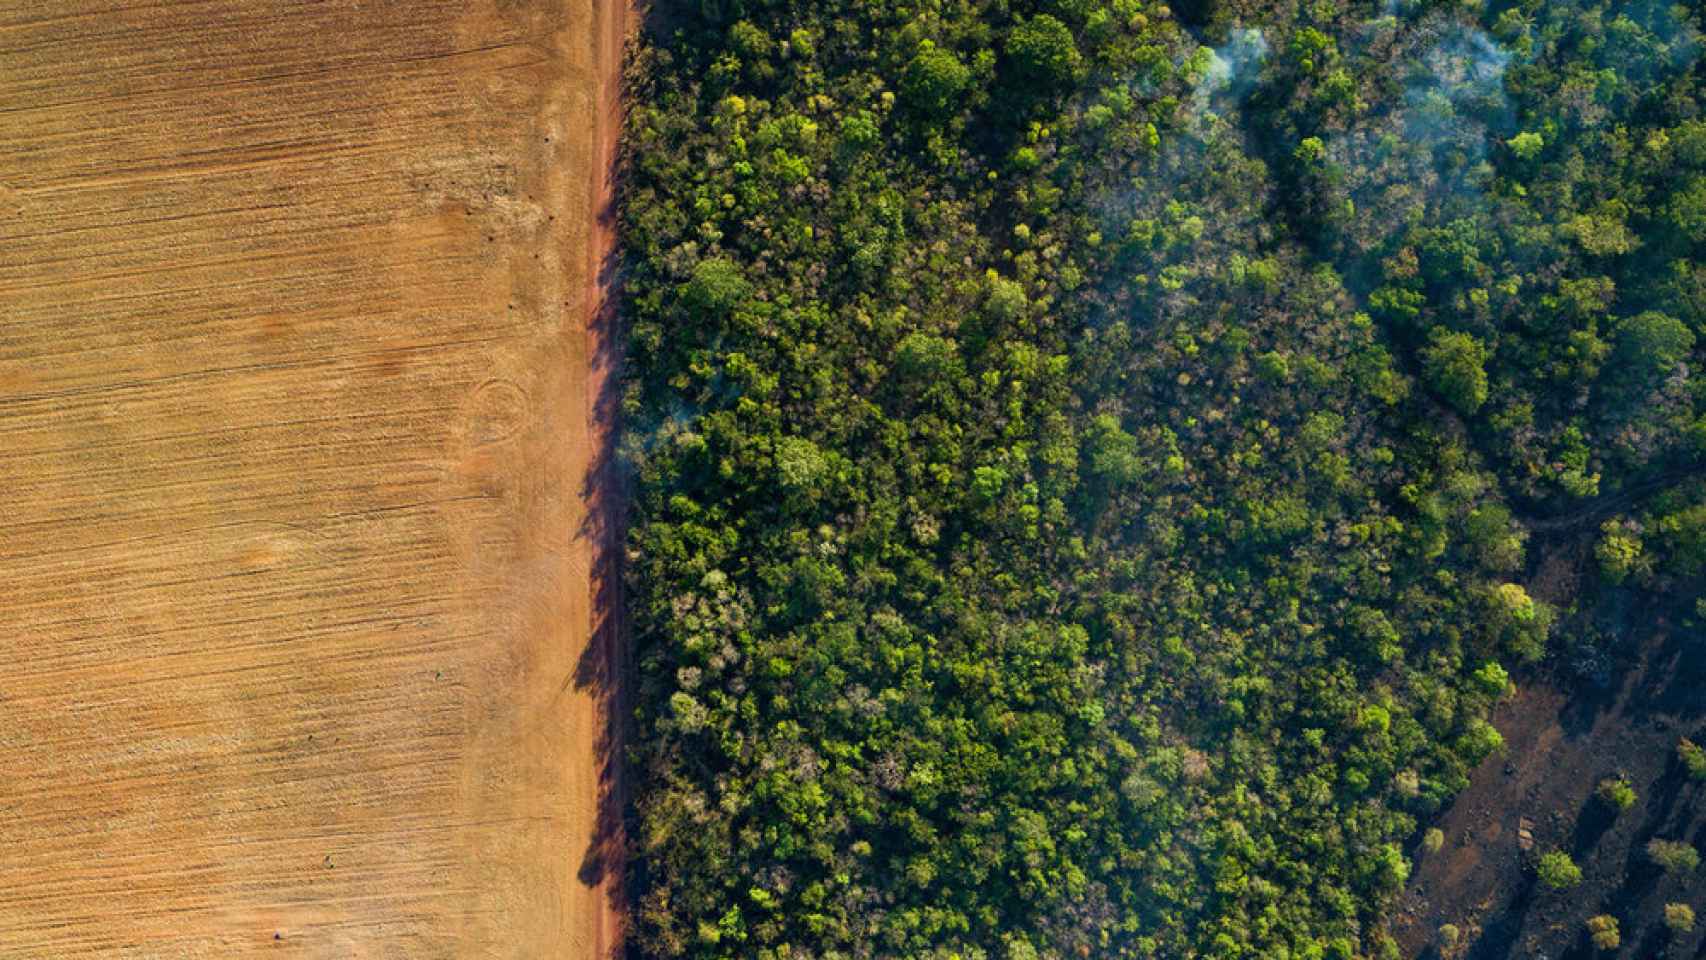 Vista aérea de un campo de maíz cosechado y un bosque bajo la neblina de humo de los incendios forestales incontrolados en Brasil.